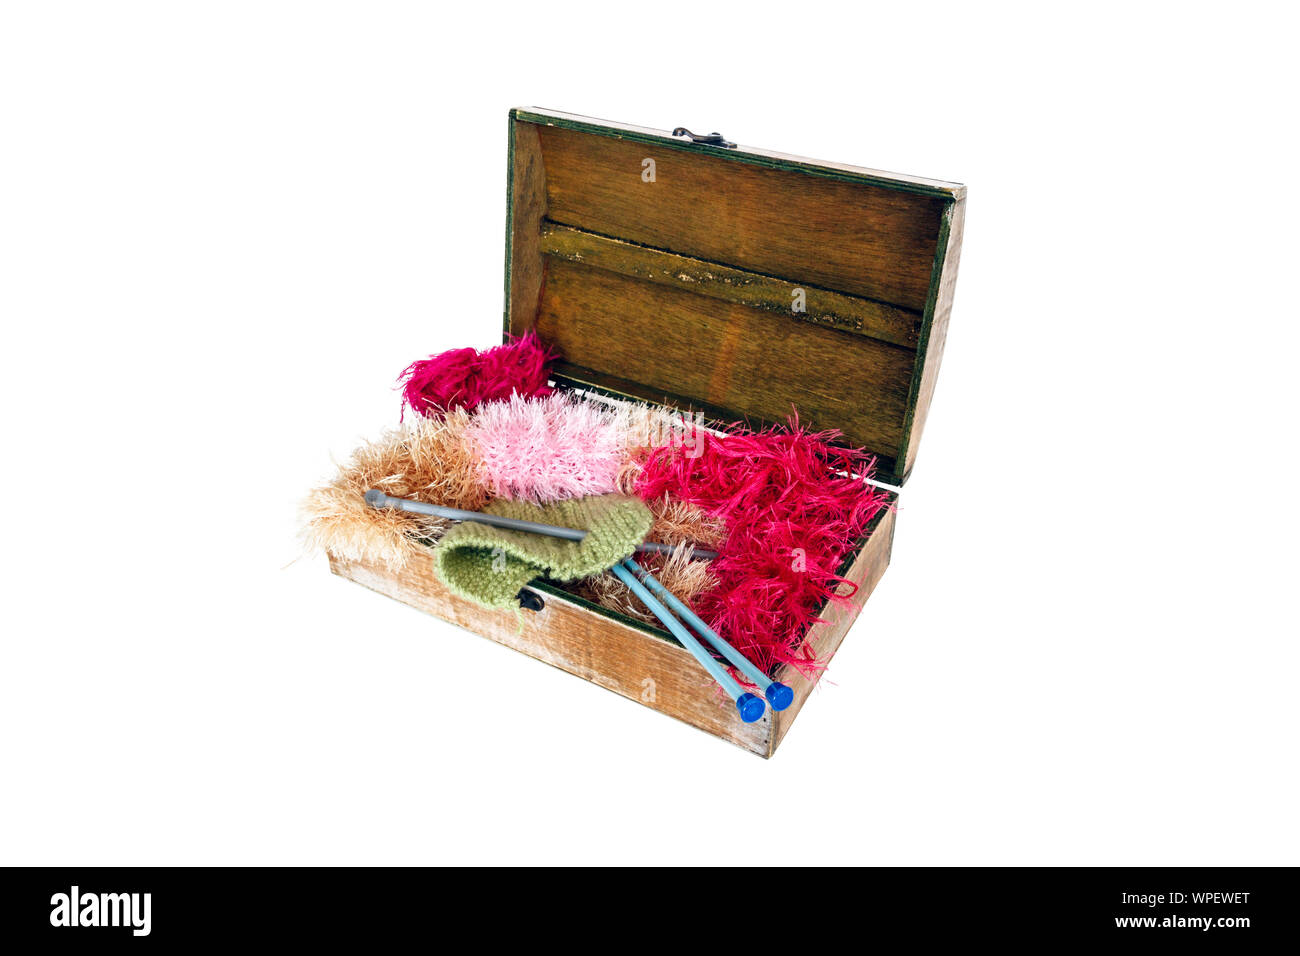 Une boîte contenant des bateaux en bois, aiguilles à tricoter, de la laine et la laine, isolé sur fond blanc Banque D'Images